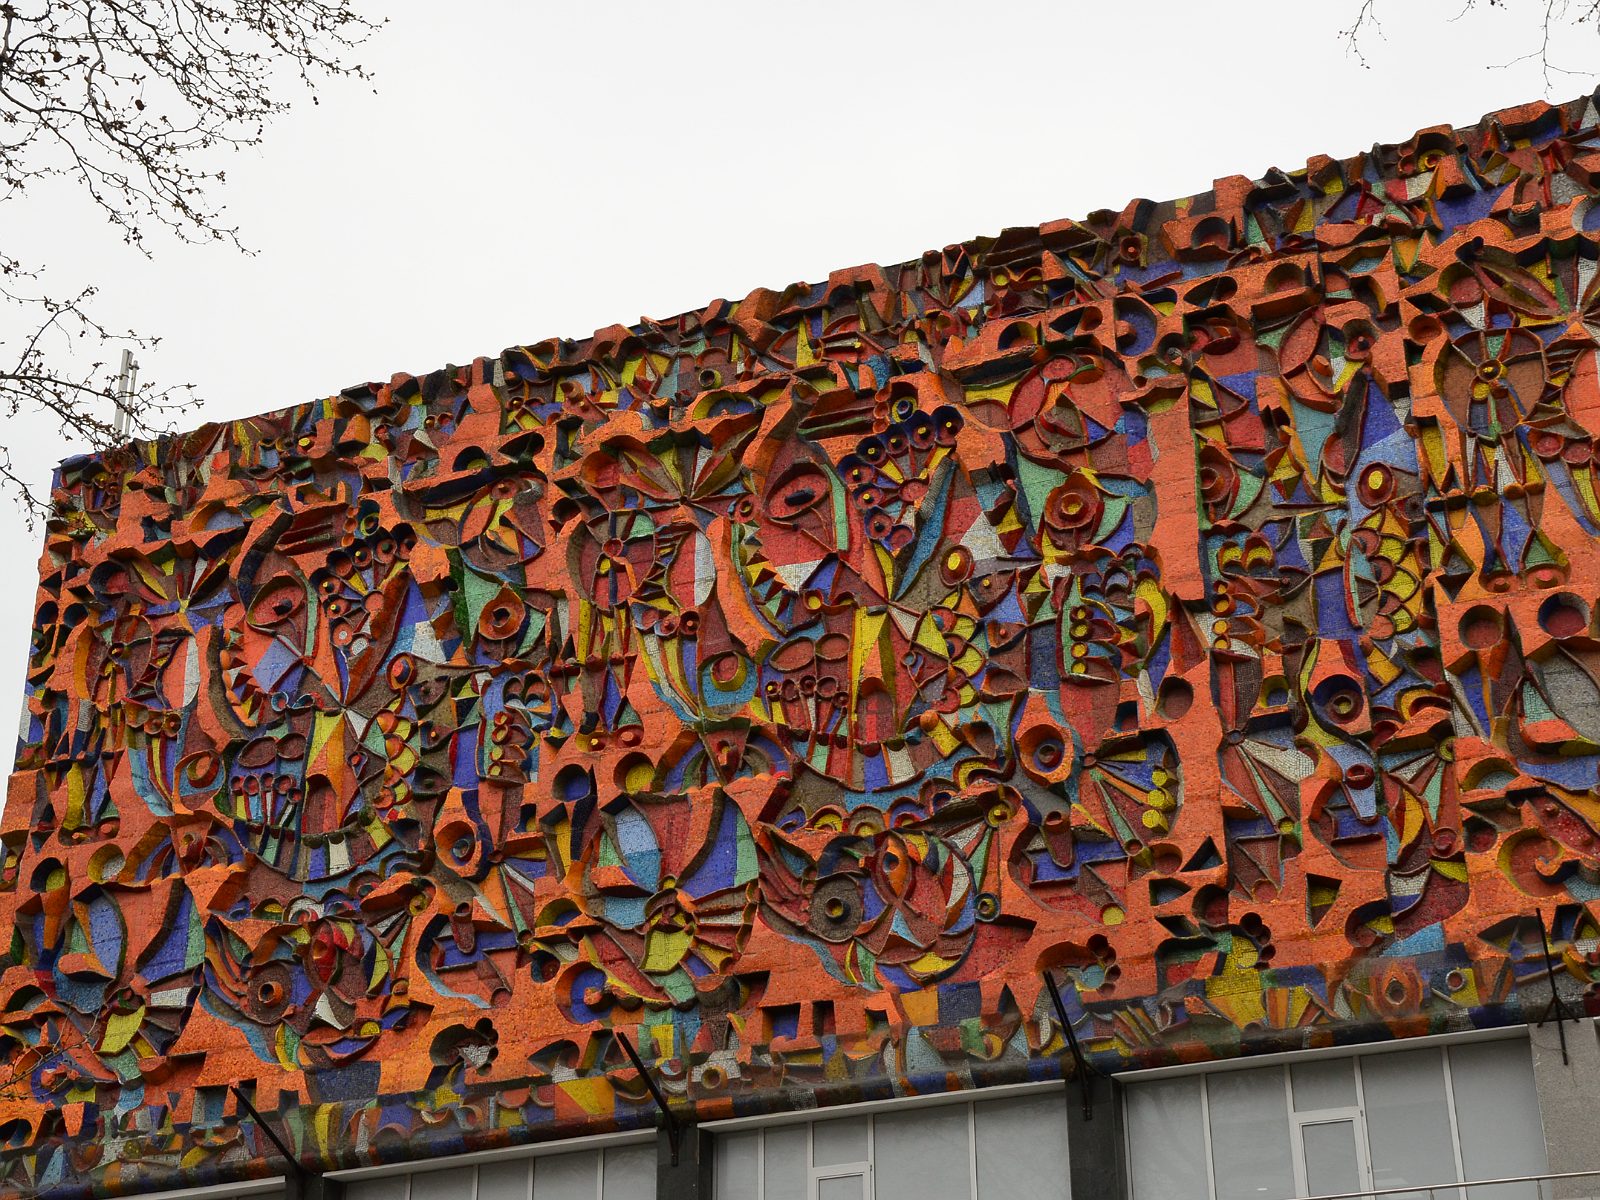 30. Pomysłowe rzeźby na ścianie budynku w Tbilisi.